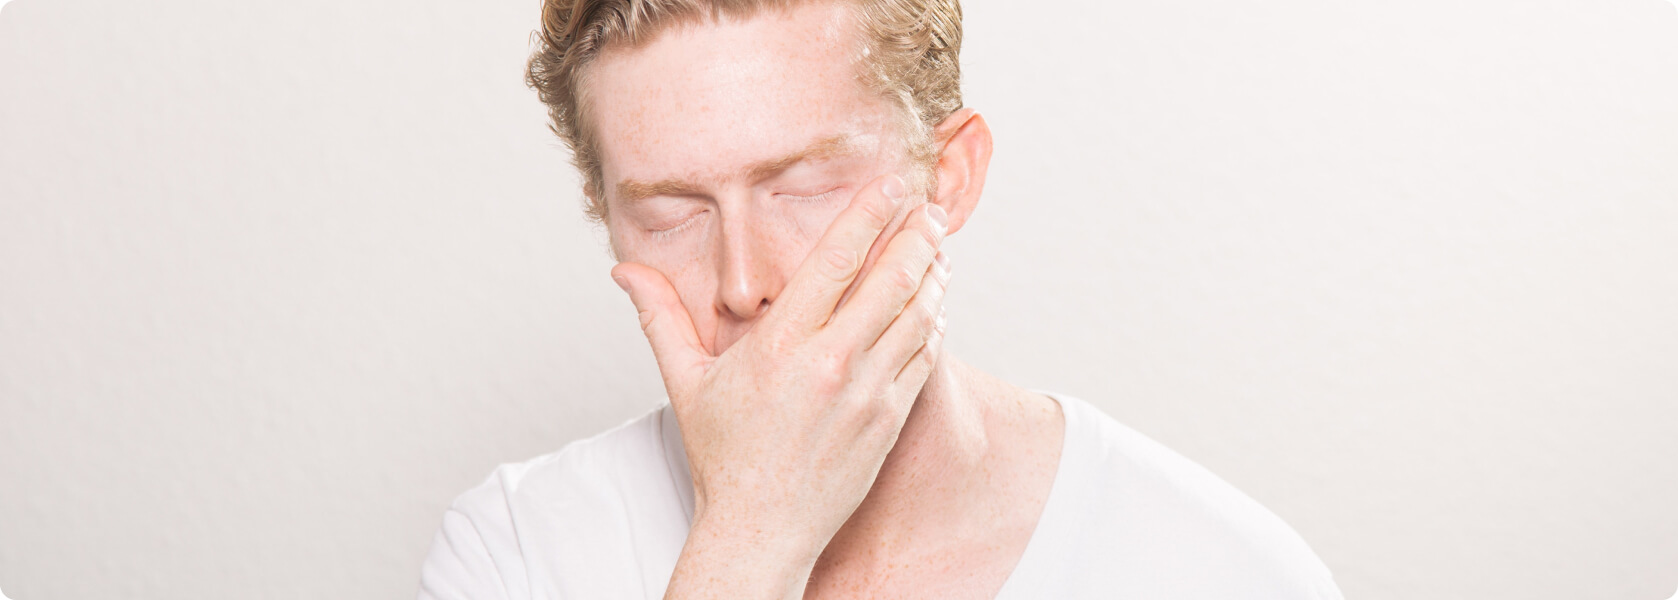 Mundgeruch (Halitosis) - Kann Mundgeruch auch aus dem Magen kommen?